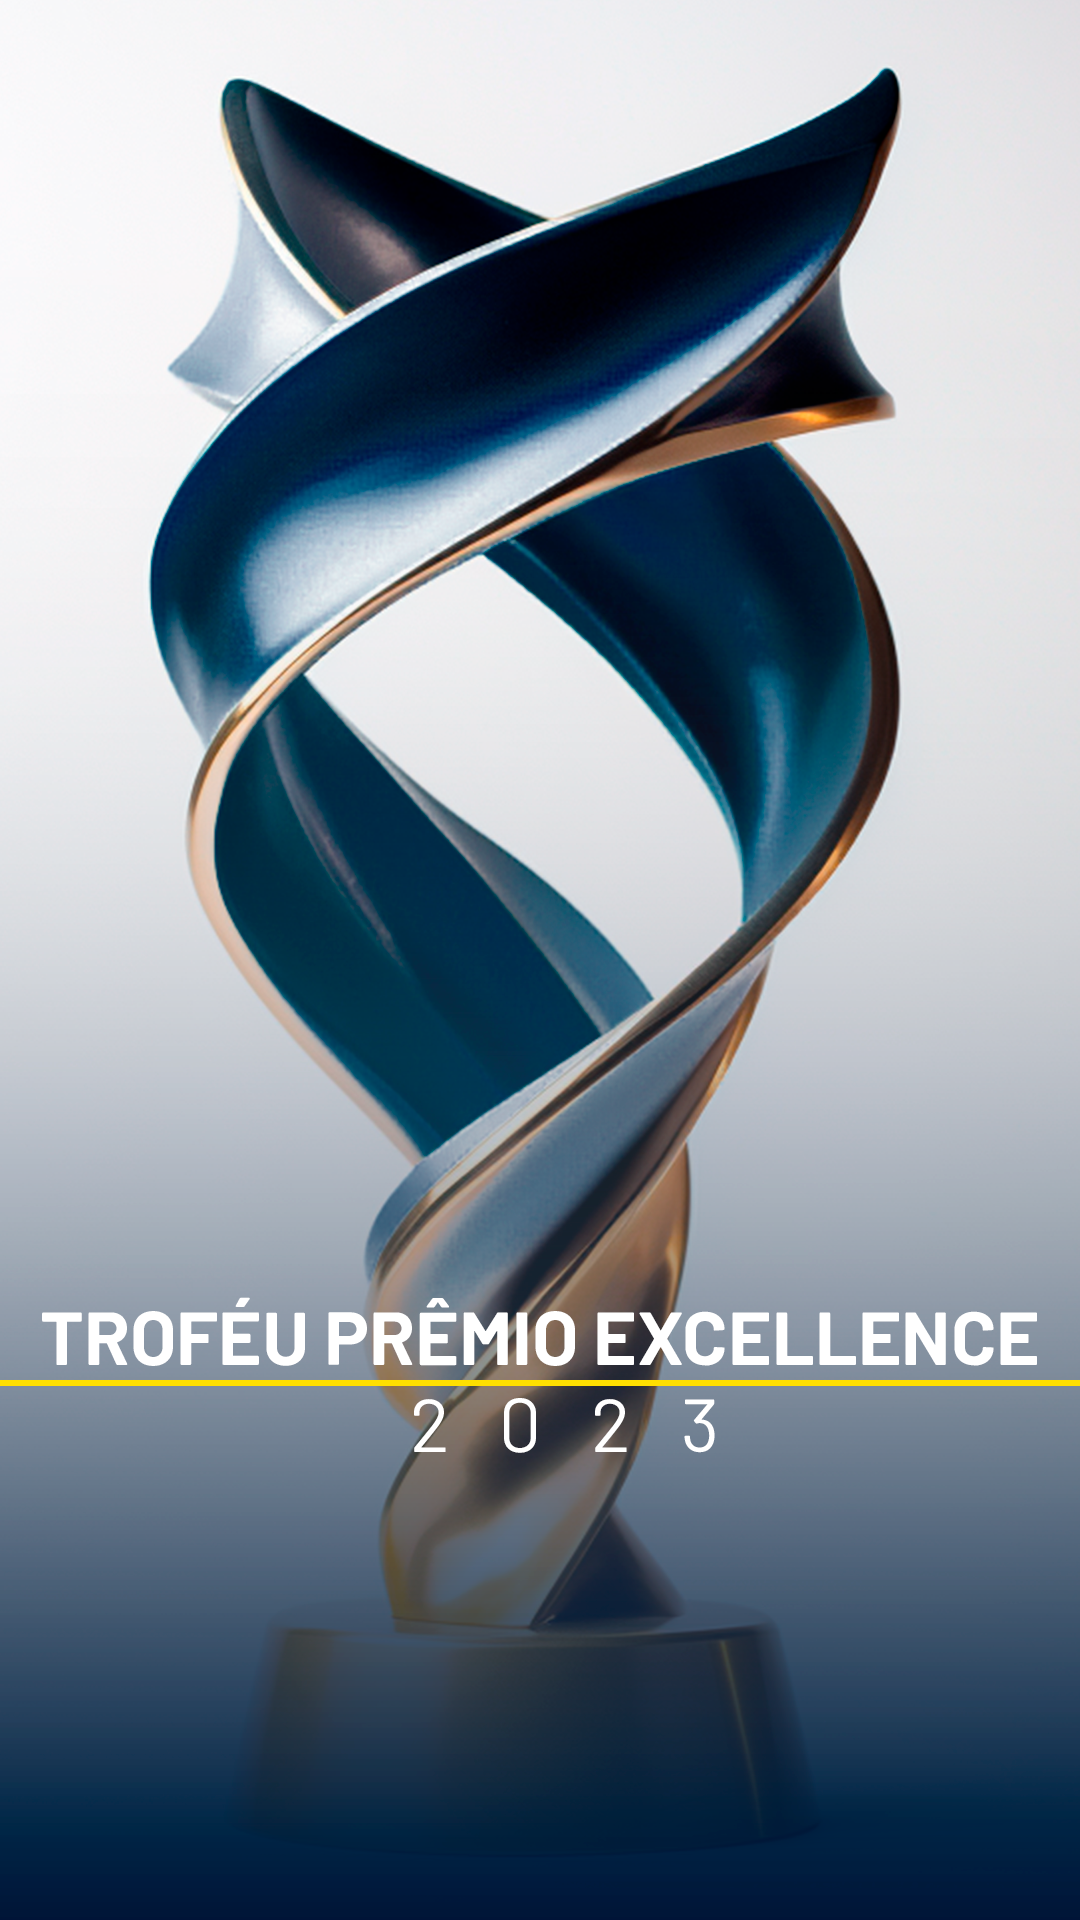 cartao-trofeu-excellence2-1